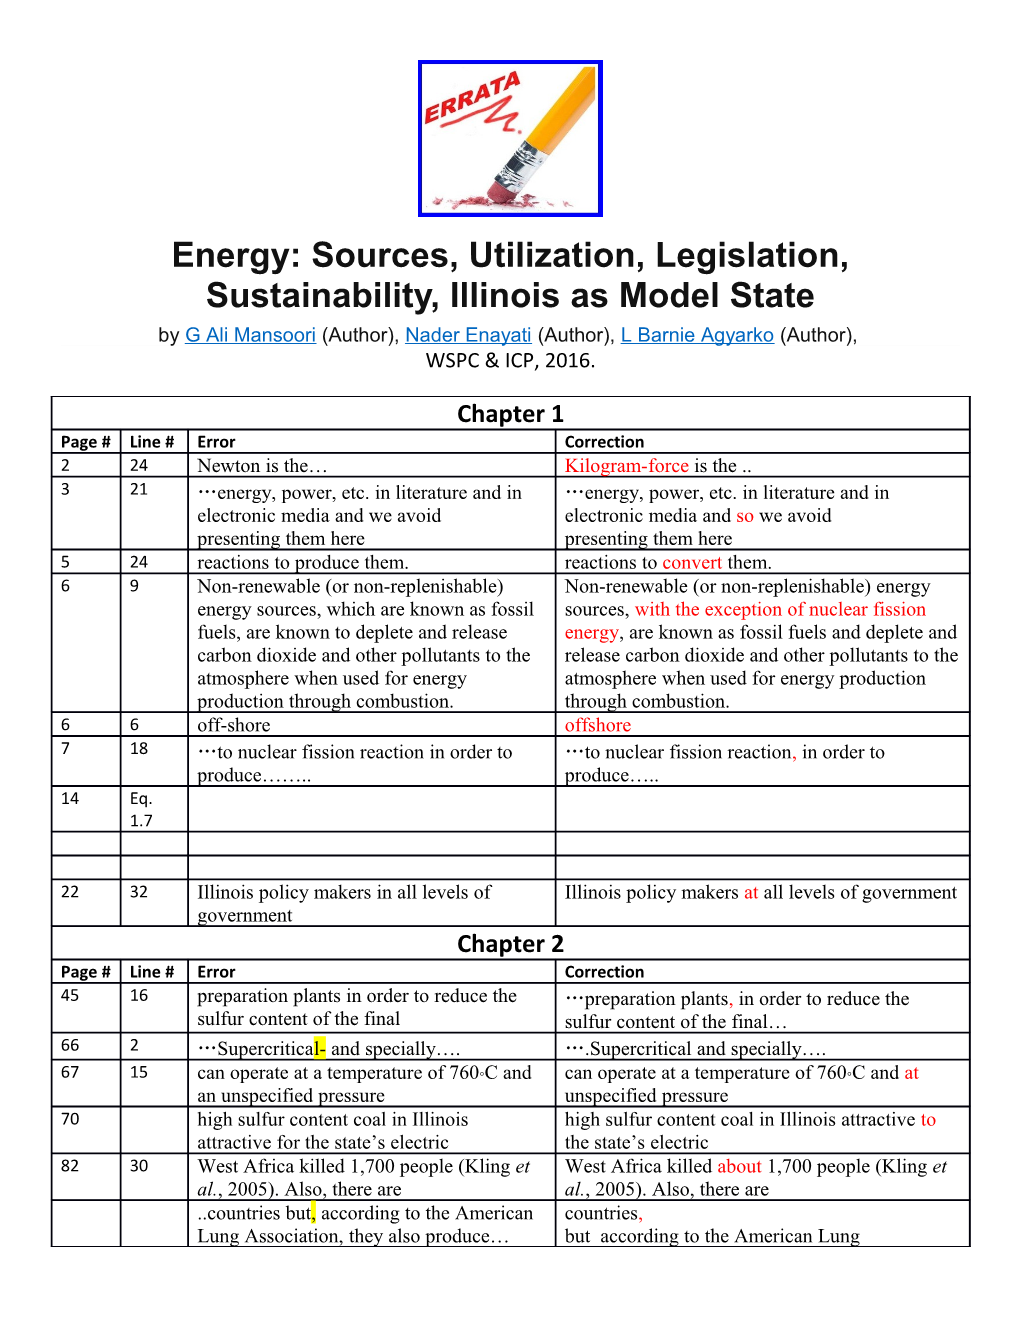 Energy: Sources, Utilization, Legislation, Sustainability, Illinois As Model State